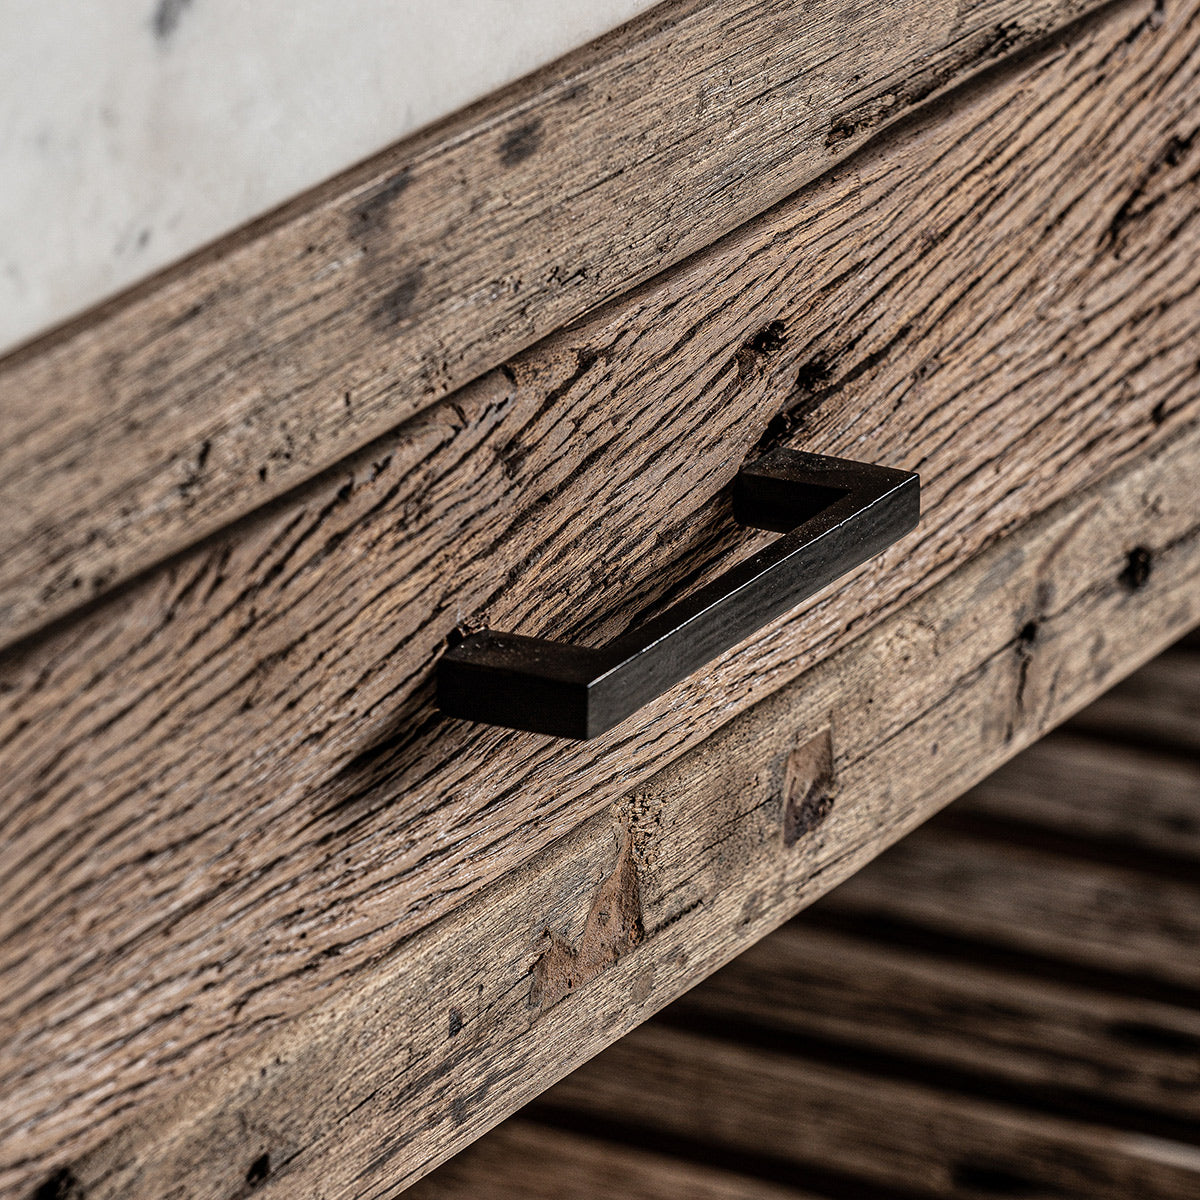 A loft stílusú párpult fiók részlete, melyen jól látszik a fa természetes rusztikus szerkezete.